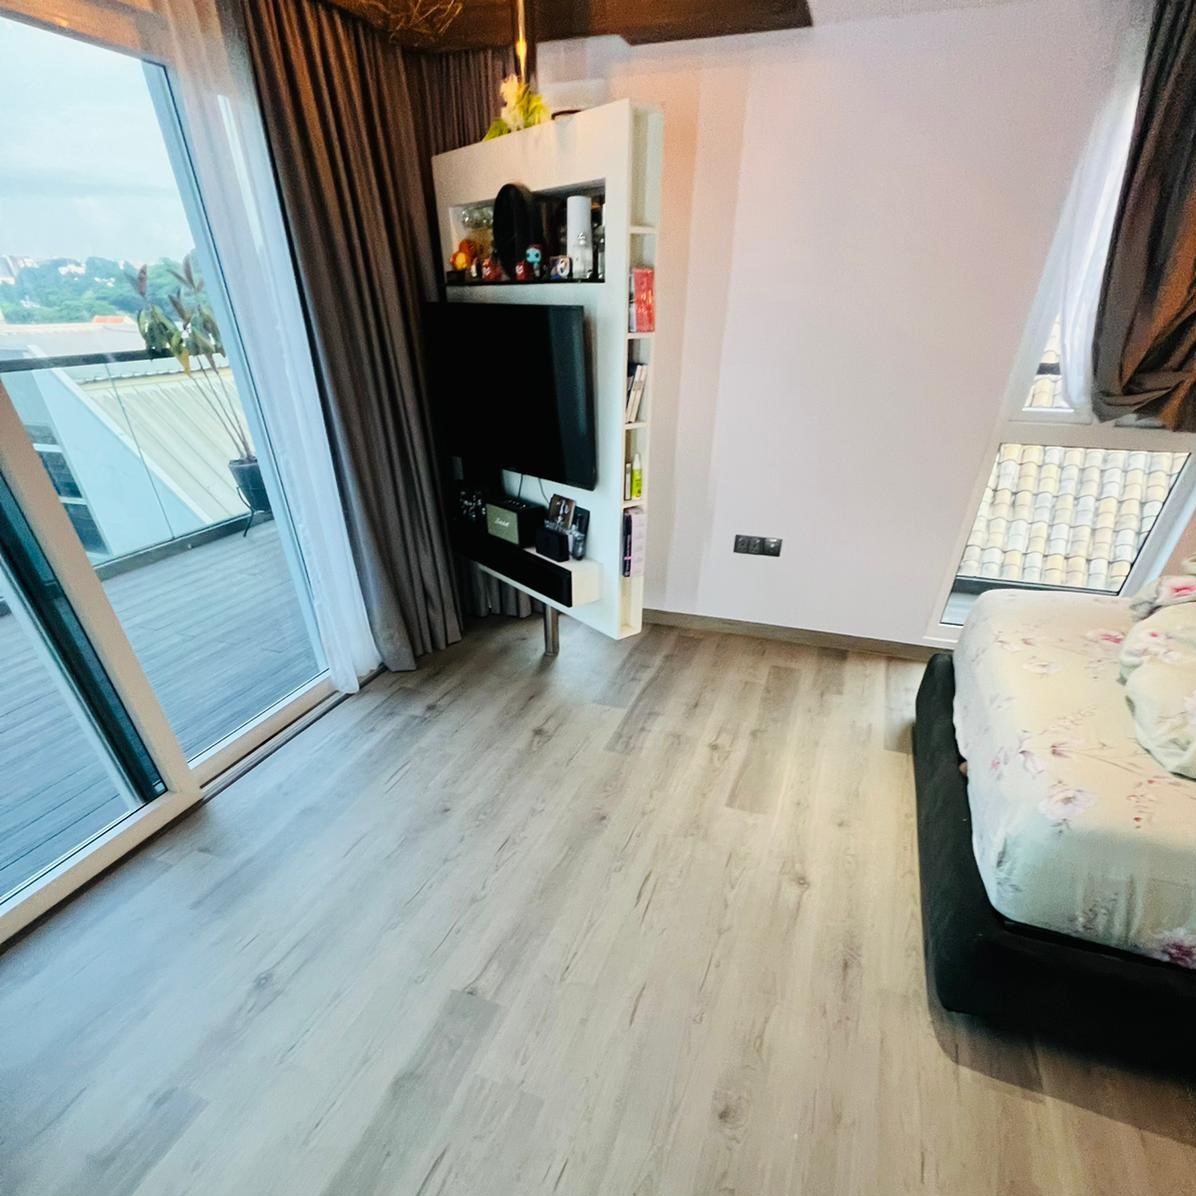 vinyl flooring bedroom with view